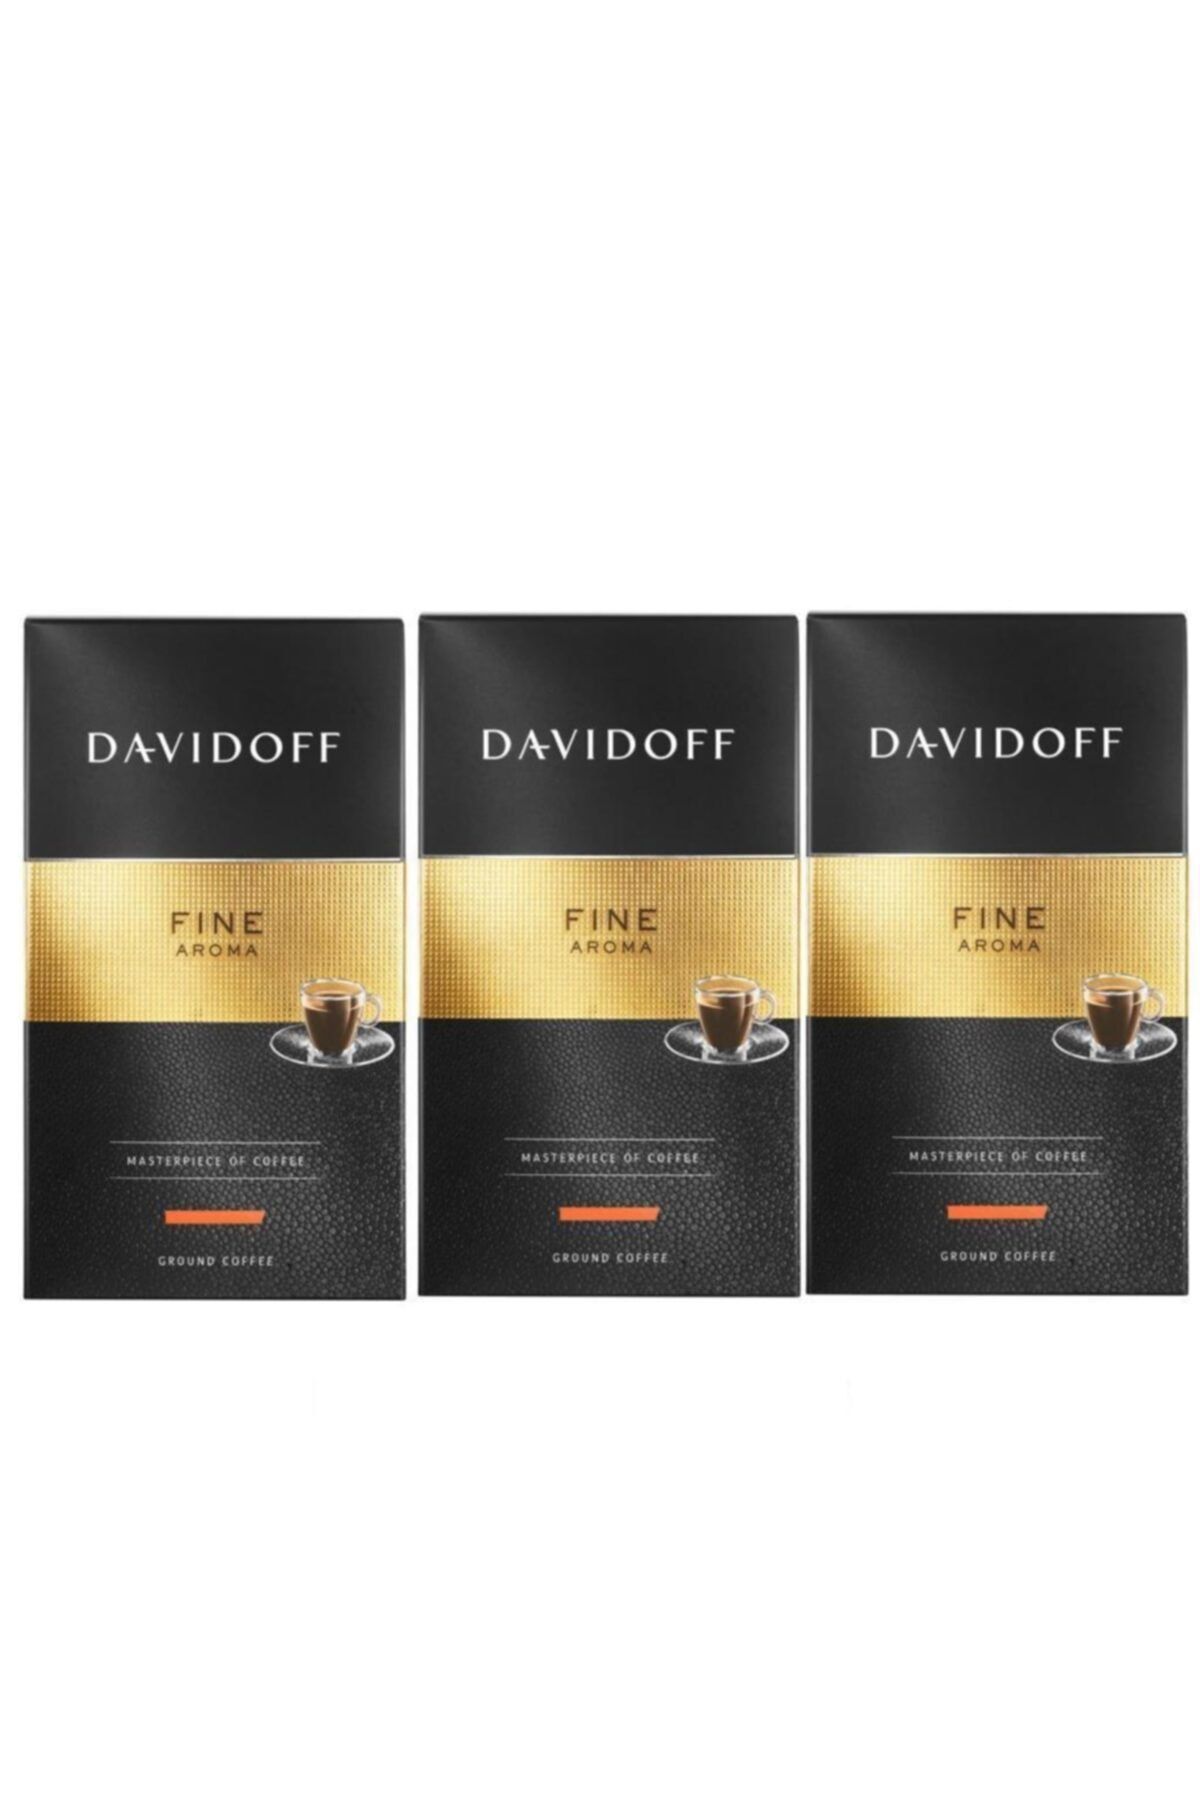 Davidoff Fine Aroma Filtre Kahve 250 gr 3'lü